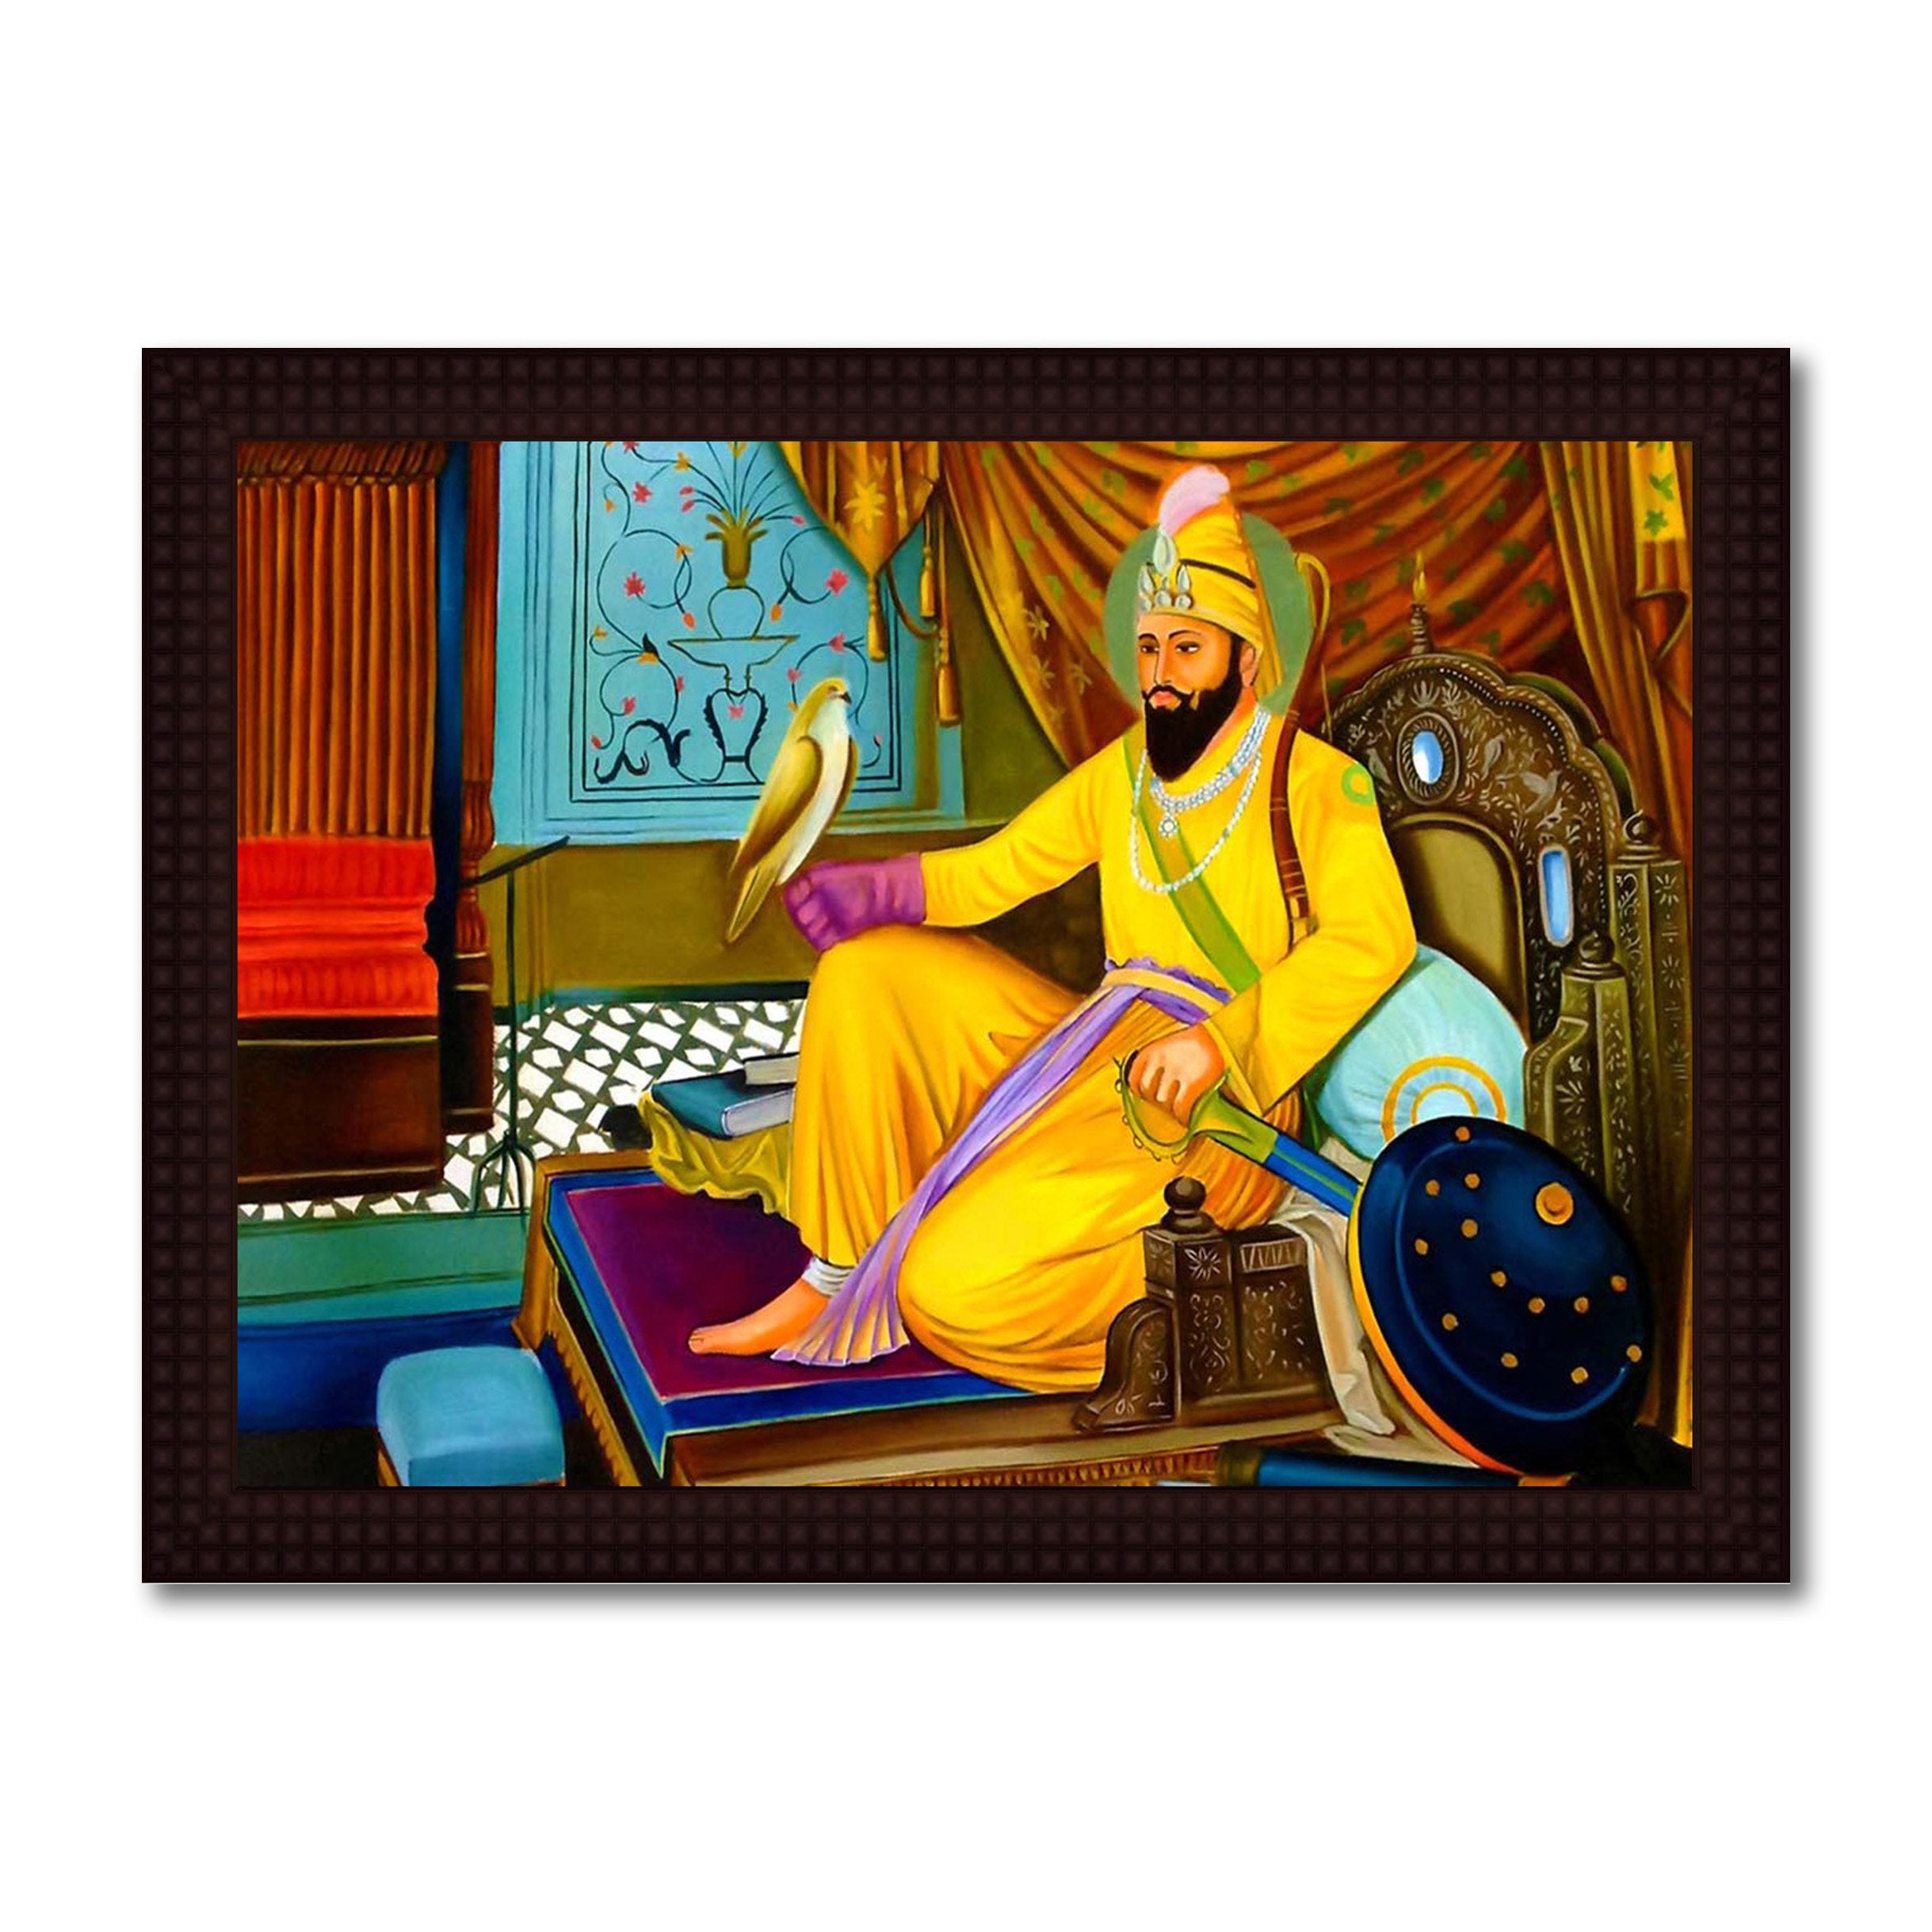 Guru Gobind Singh Ji